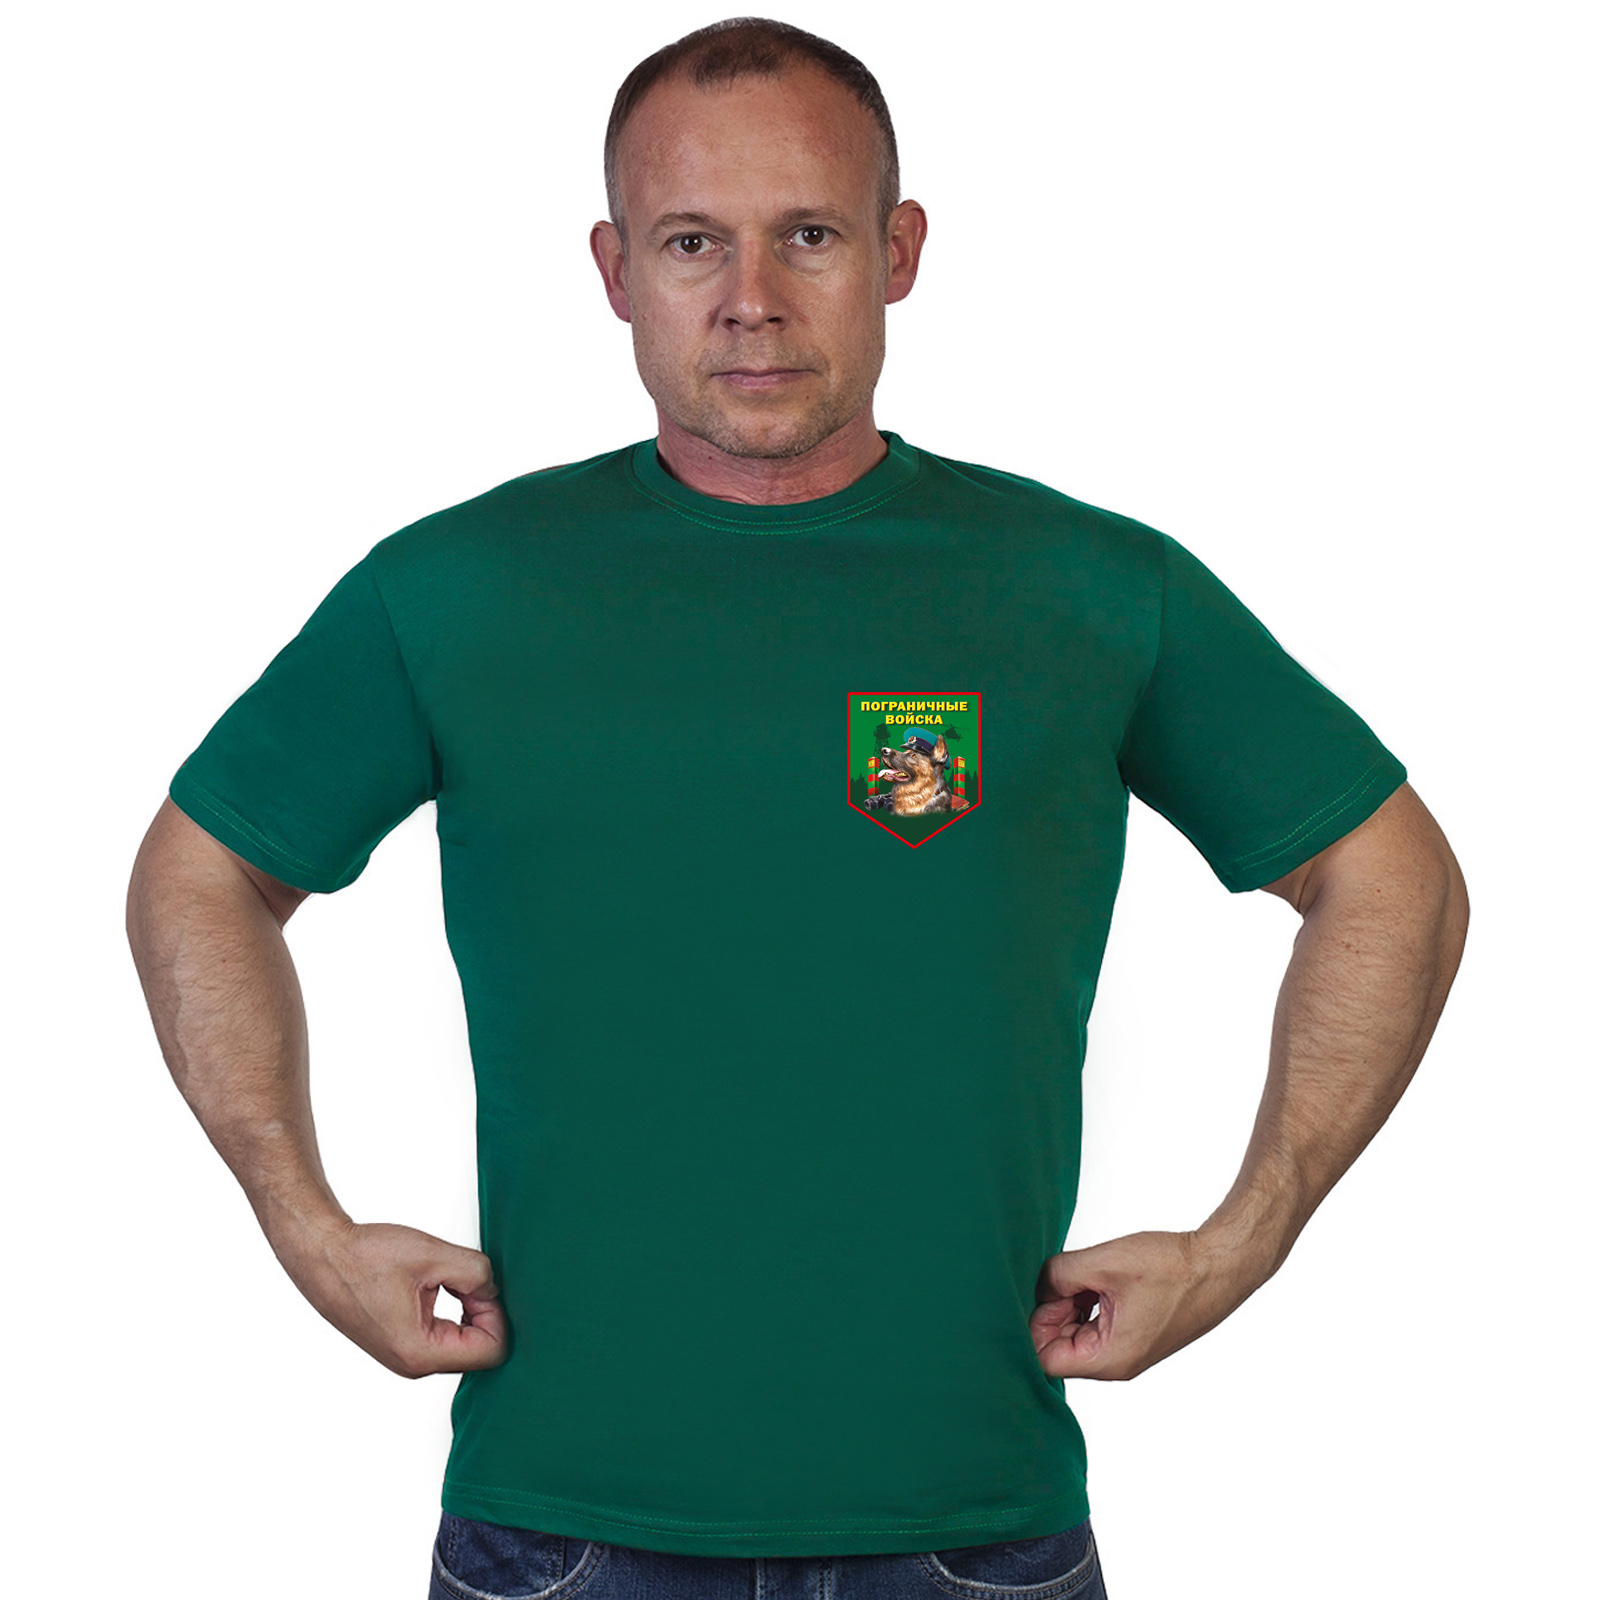 Зелёная футболка с термотрансфером пограничных войск 